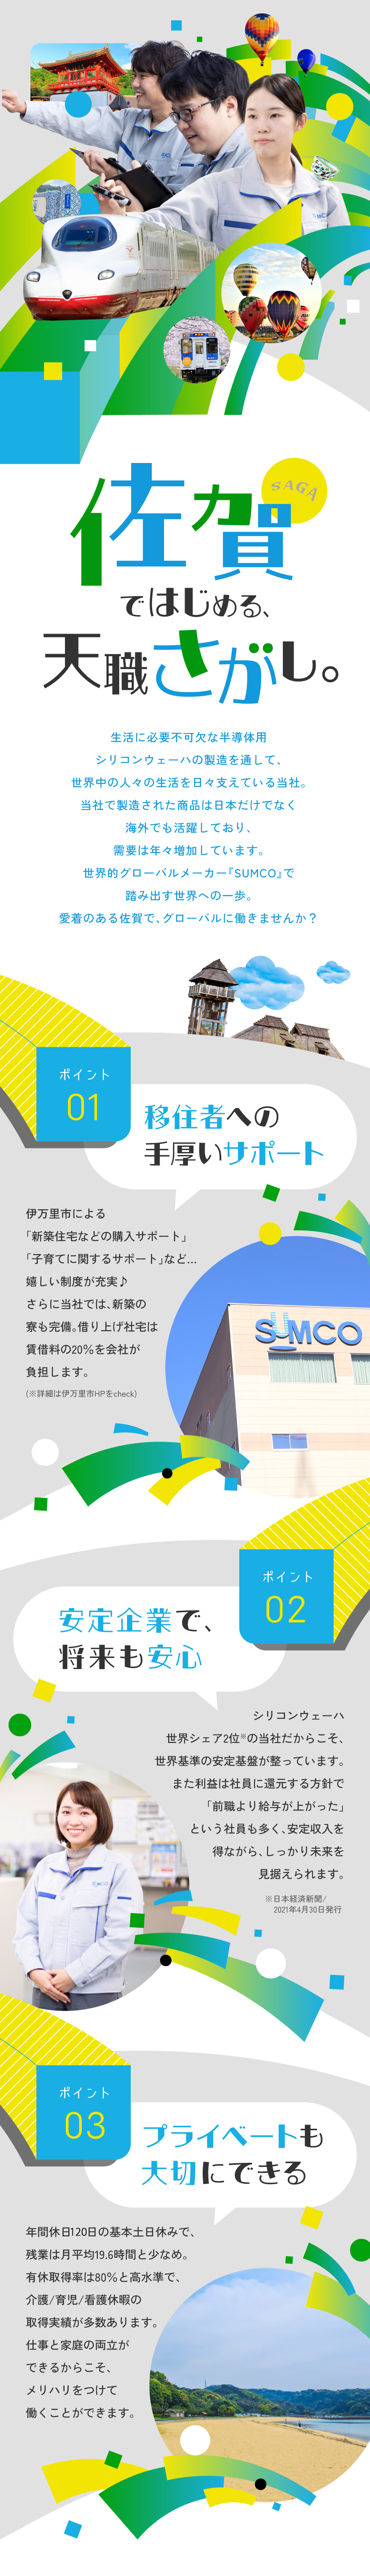 株式会社SUMCOからのメッセージ